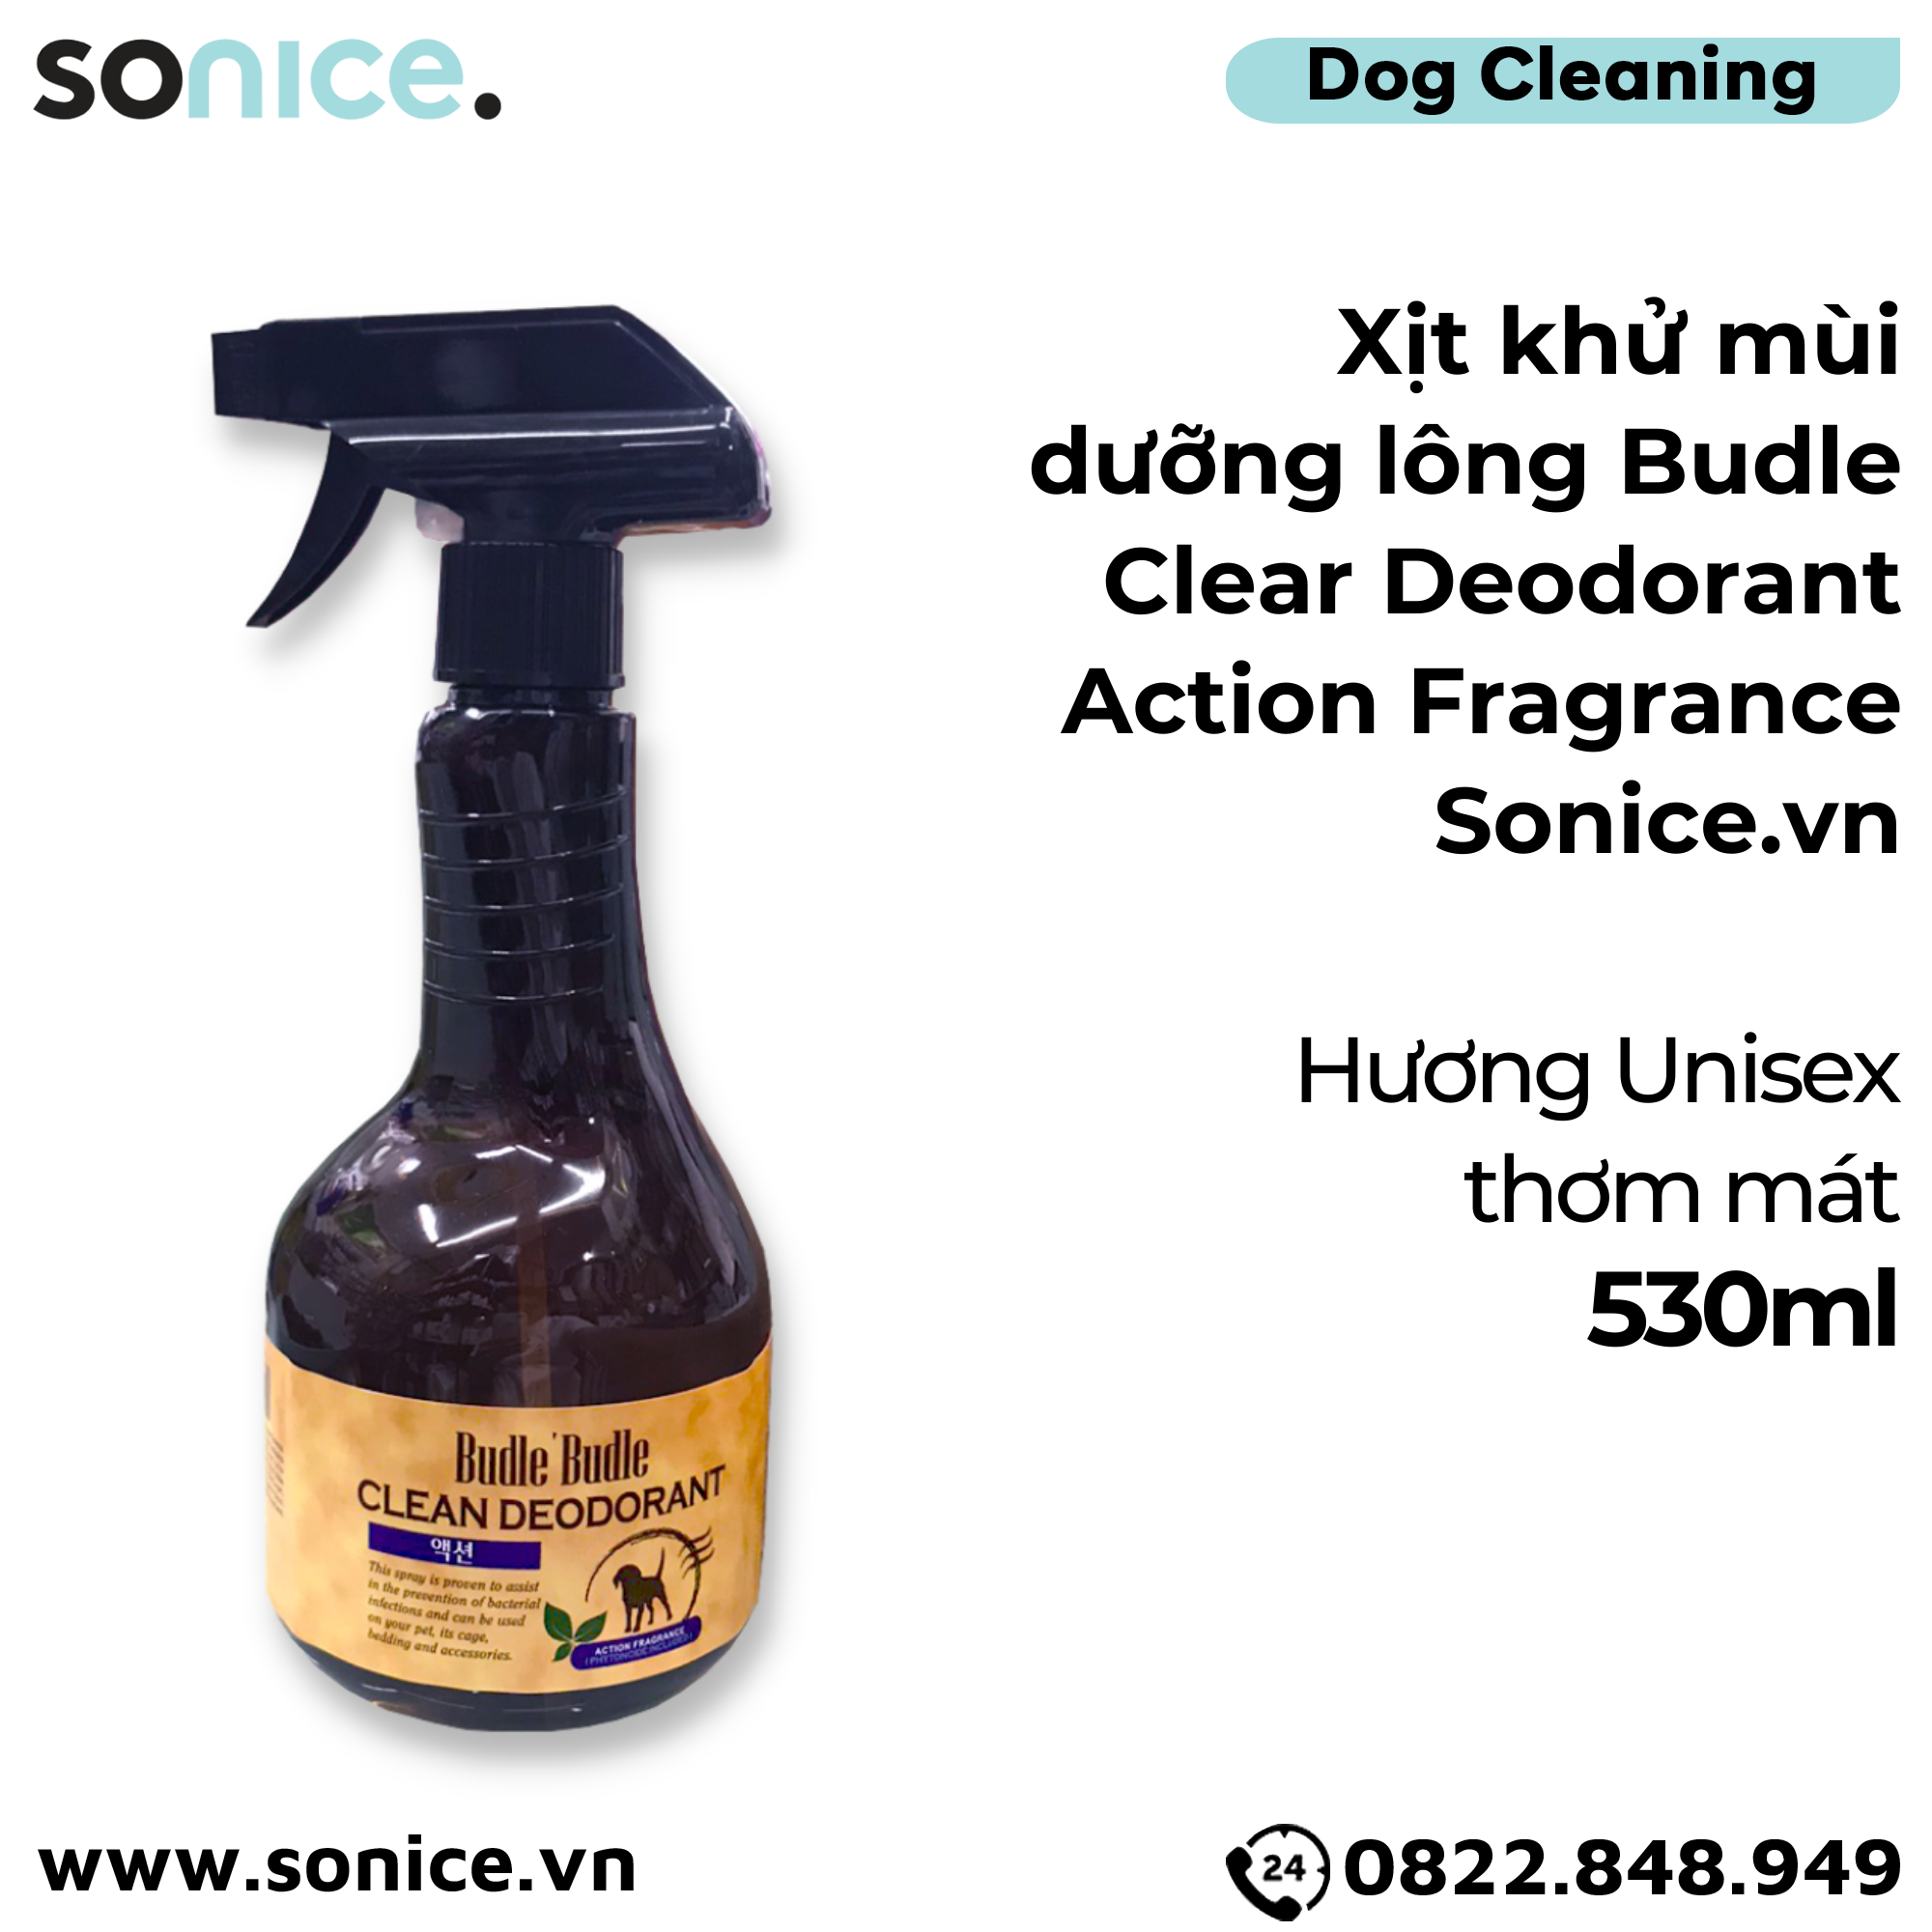  Xịt khử mùi dưỡng lông Budle Clear Deodorant Action Fragrance 530ml - Hương Unisex thơm mát SONICE. 